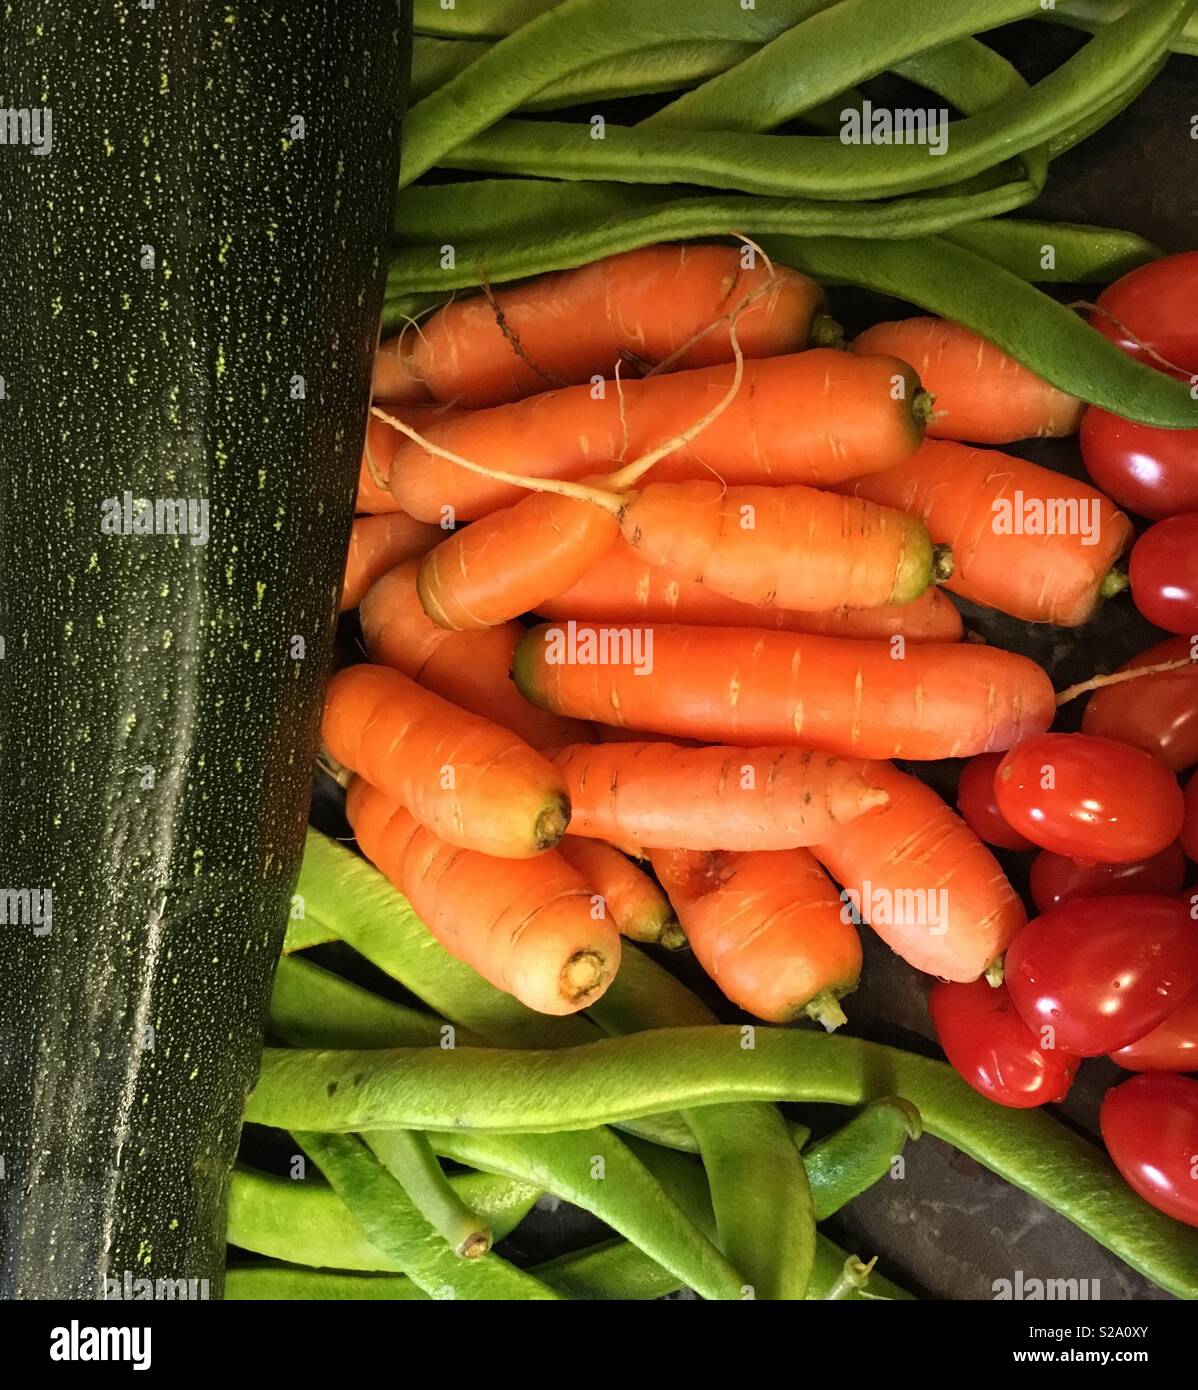 Giardino una verdura pronta per la cottura. - Mercato di ortaggi ; carote, fagioli, zucchine e pomodori al buio su un piano di lavoro Foto Stock